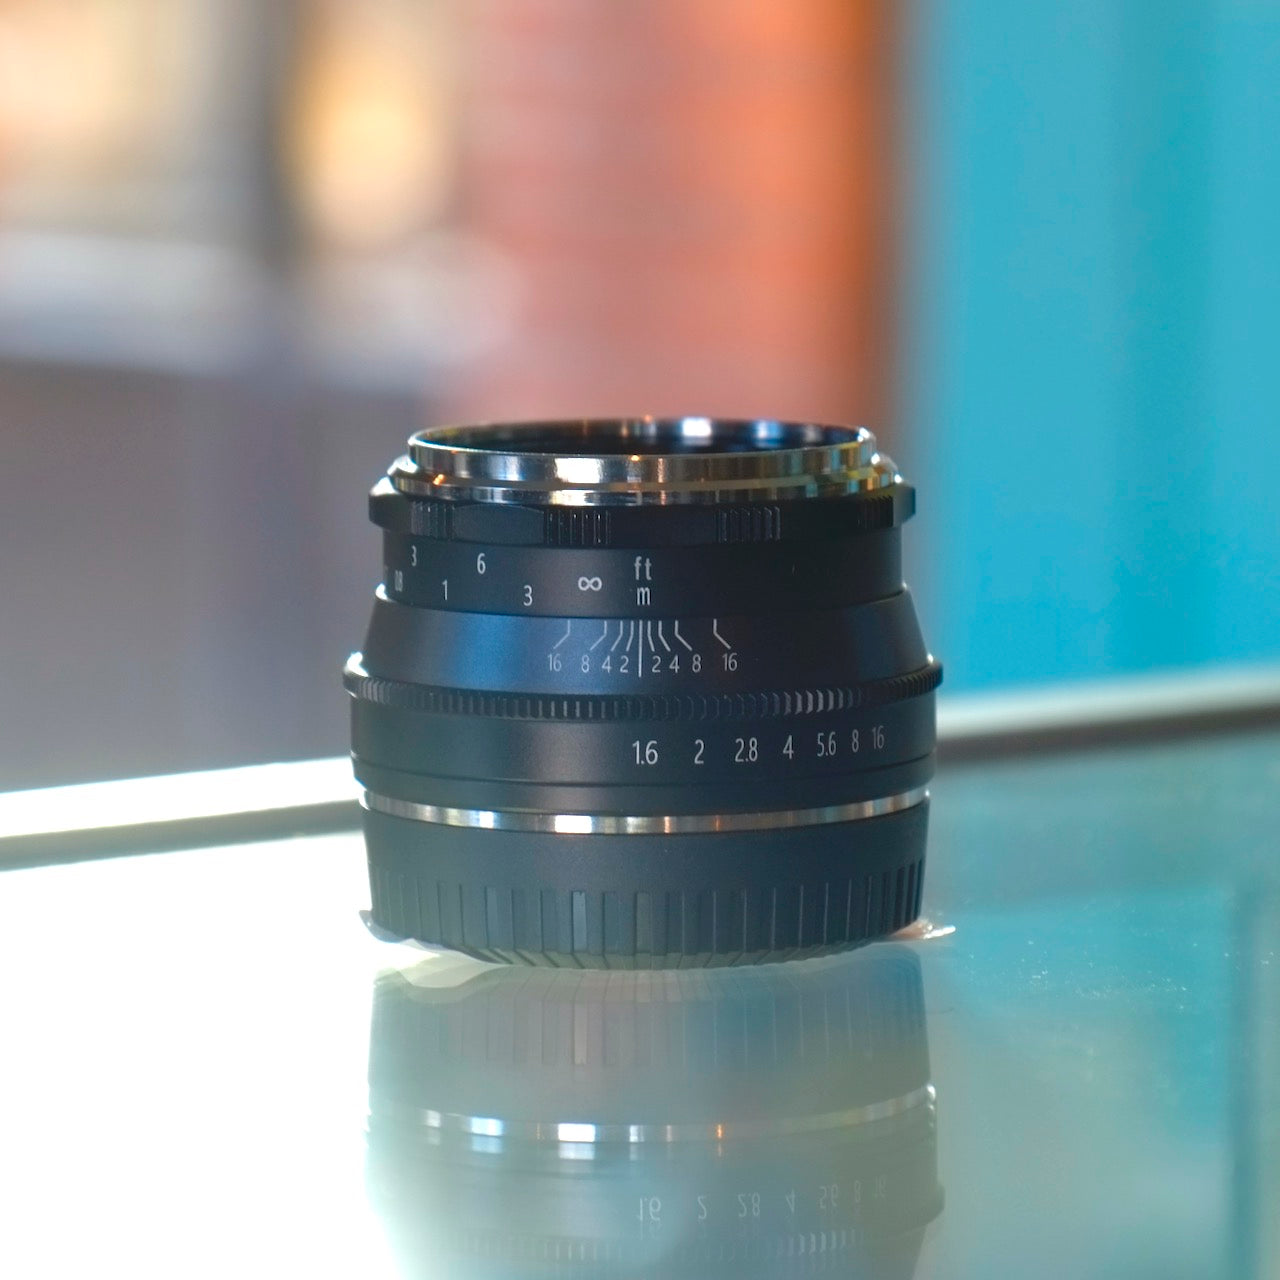 Pergear 35mm f1.6 lens for Fuji X